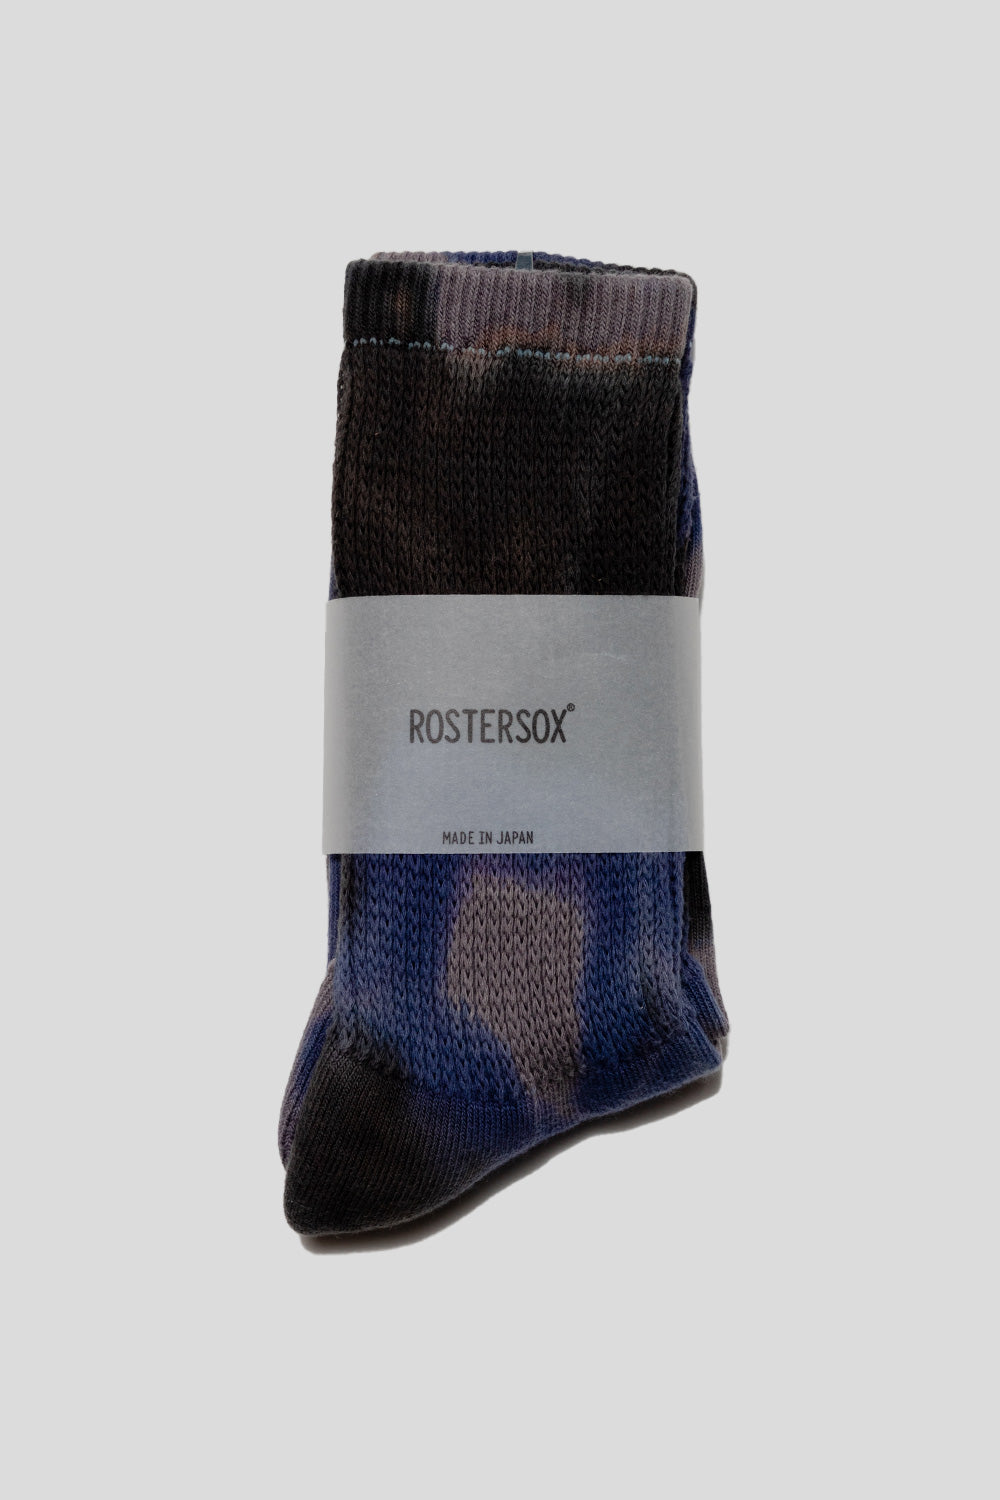 Rostersox TD Socks in Black